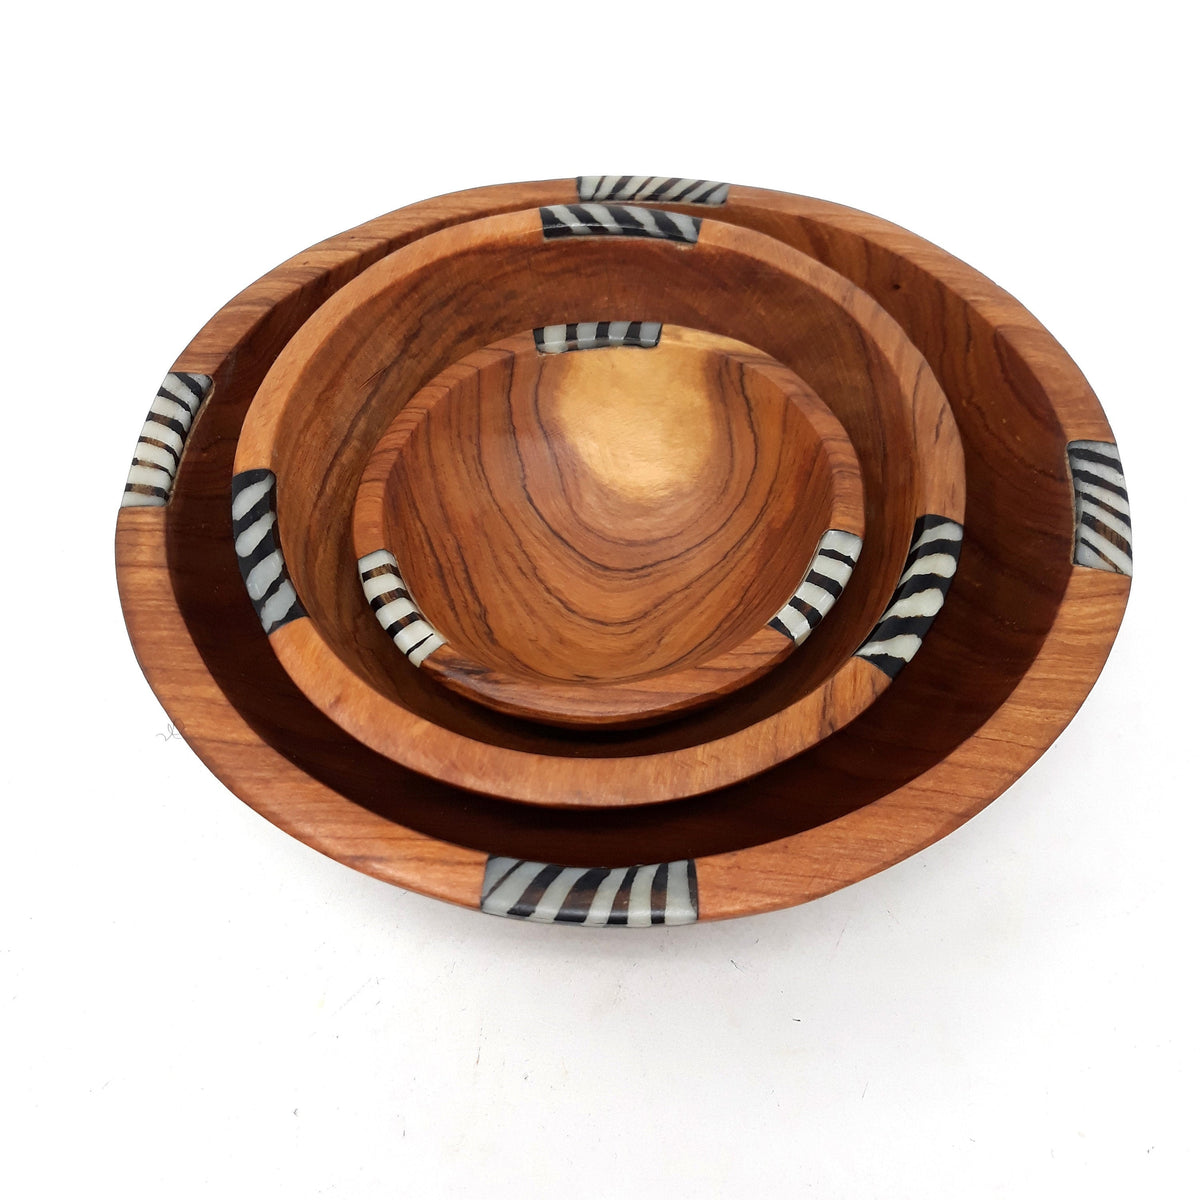 Wooden gift set, Wooden bowl set, Handmade wooden bowl, Christmas gift for mom, wooden bowl set gift, wooden snack bowls, set of wood bowls,